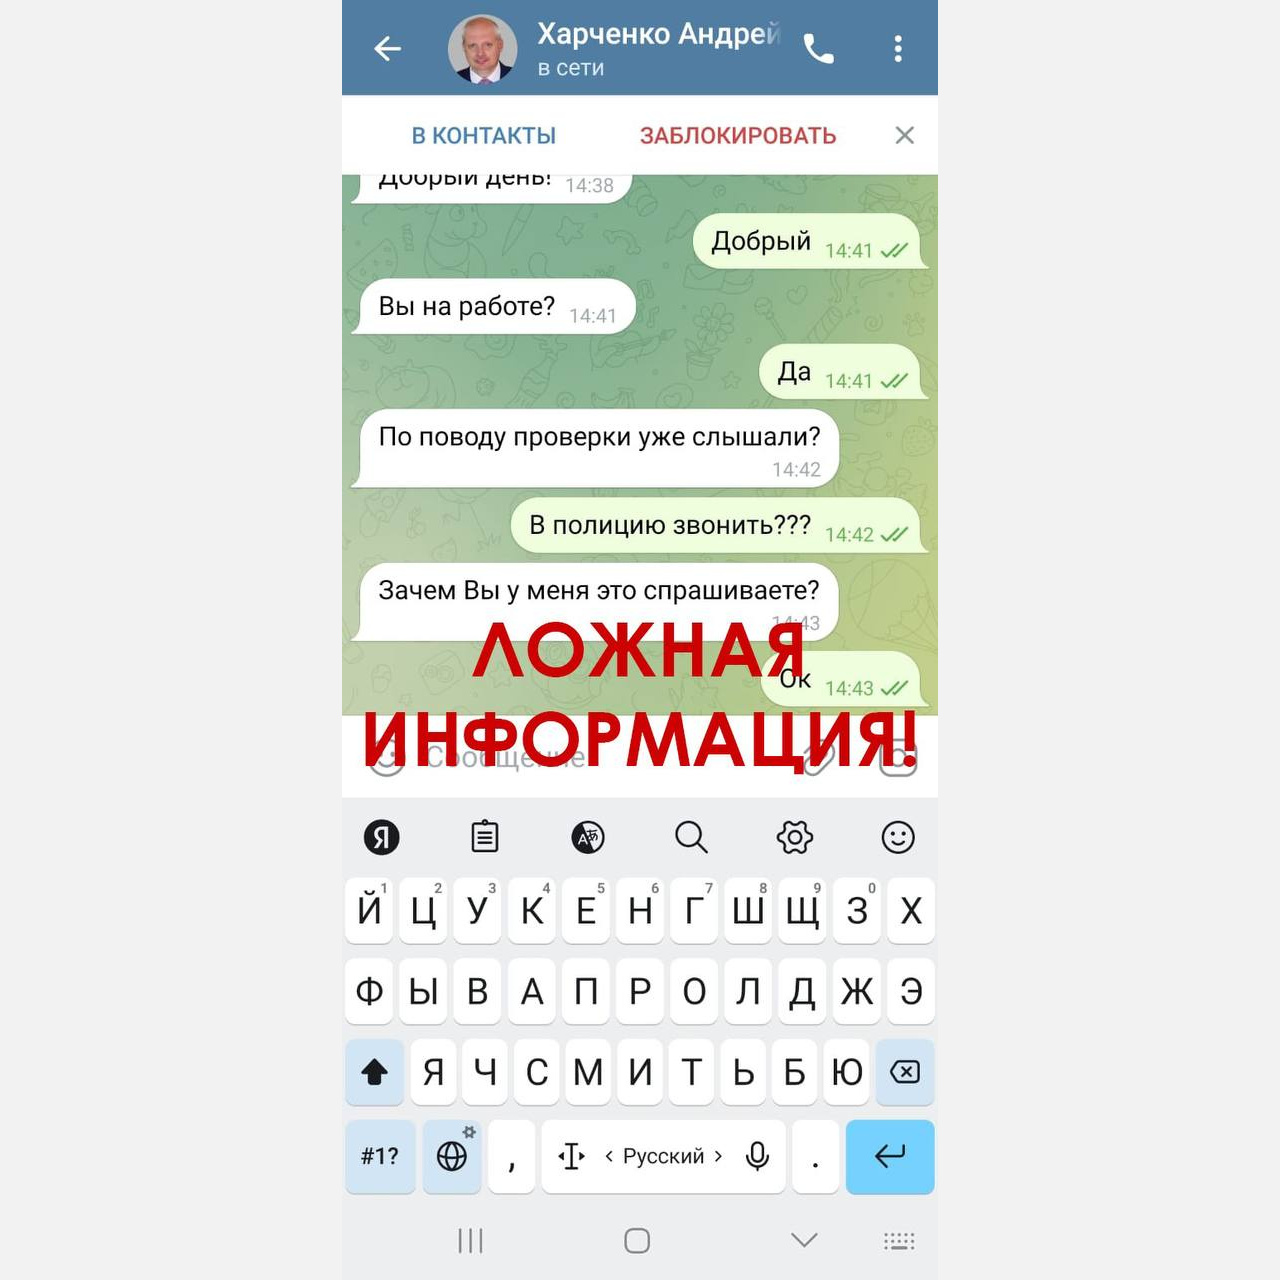 Жители Армавира получают фейковые сообщения от имени главы города Андрея Харченко 